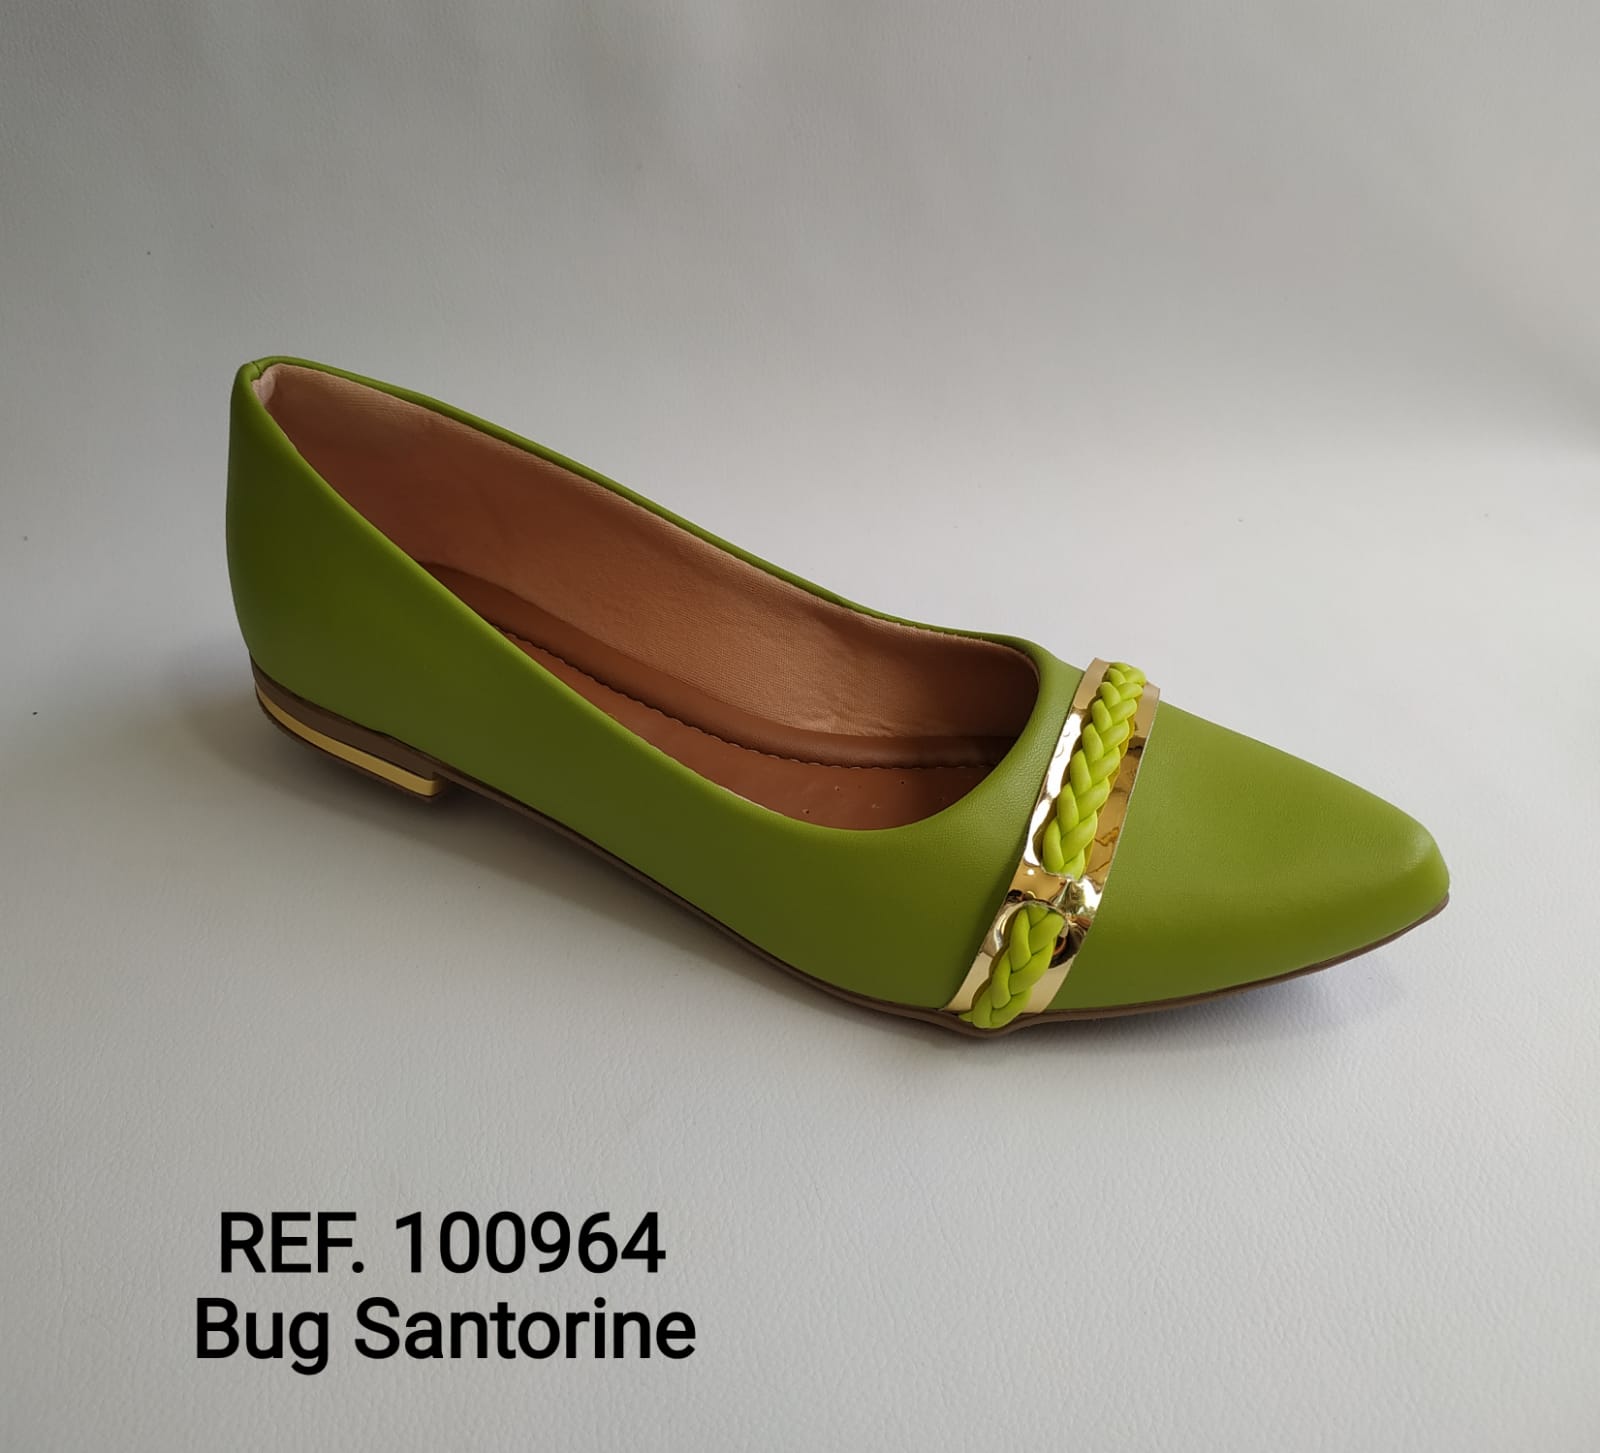 Ref. 100964 Bug Santorine